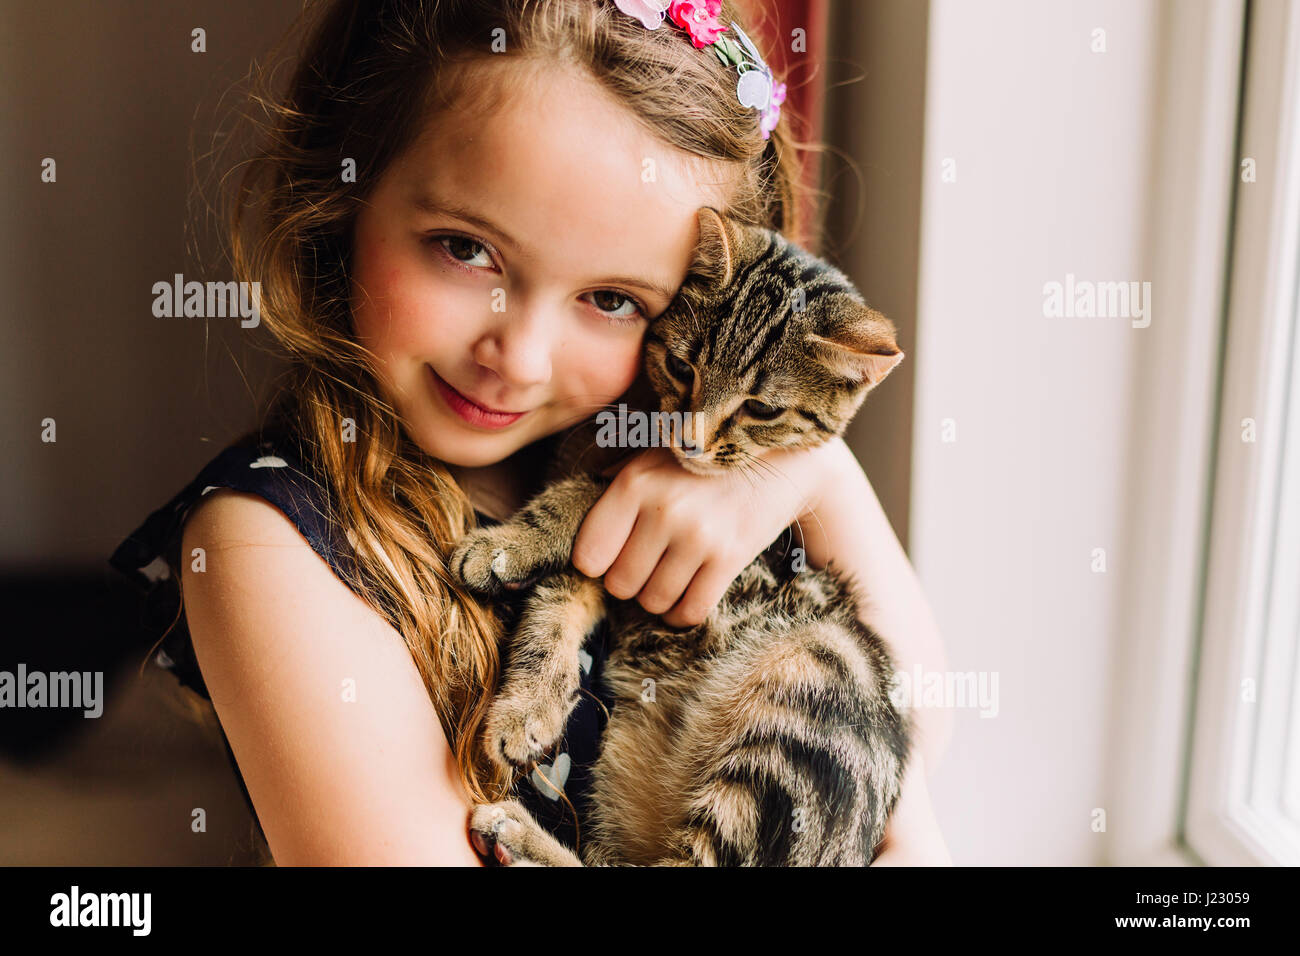 Portrait of little girl holding tabby kitten Stock Photo